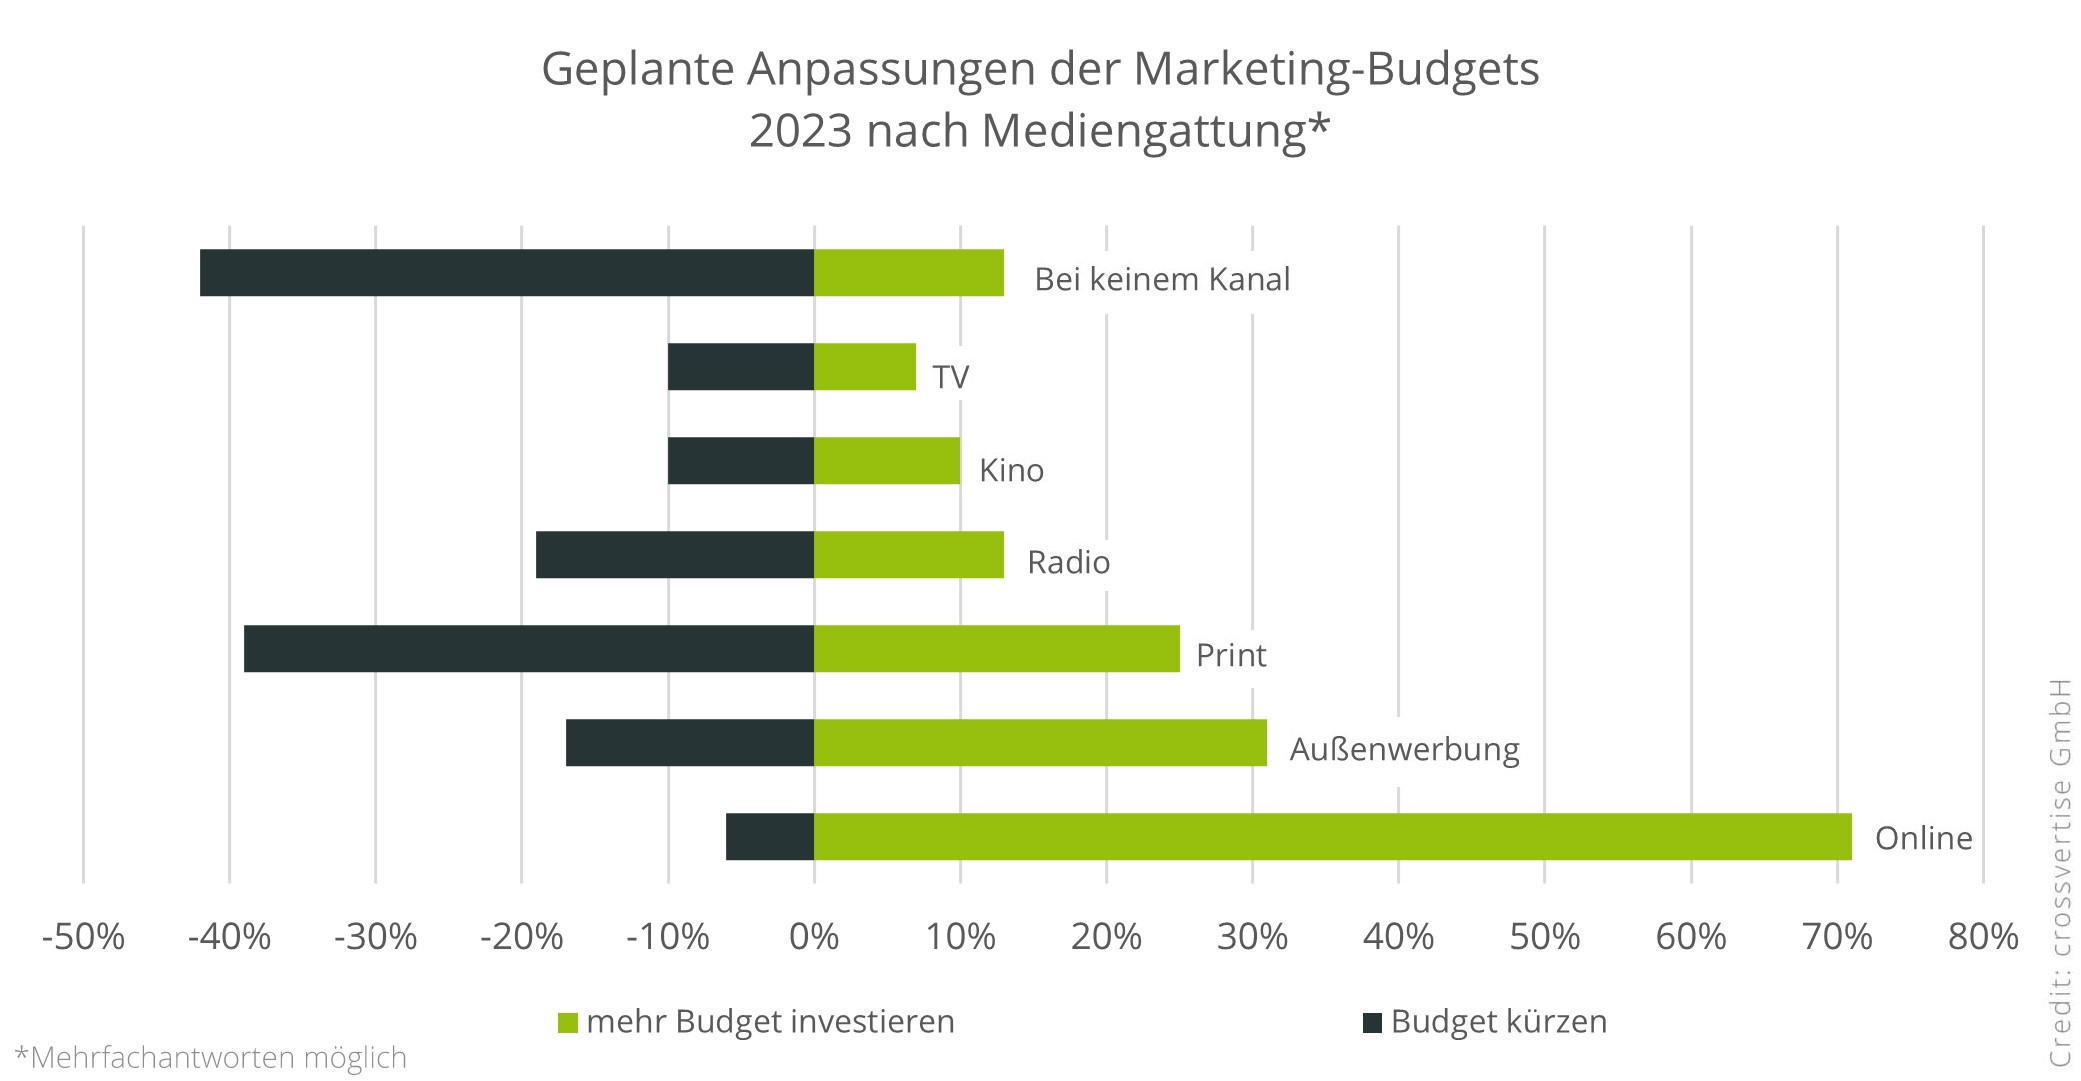 Geplante Anpassung der Marketing-Budgets nach Mediengattung - Quelle: Crossvertise GmbH 